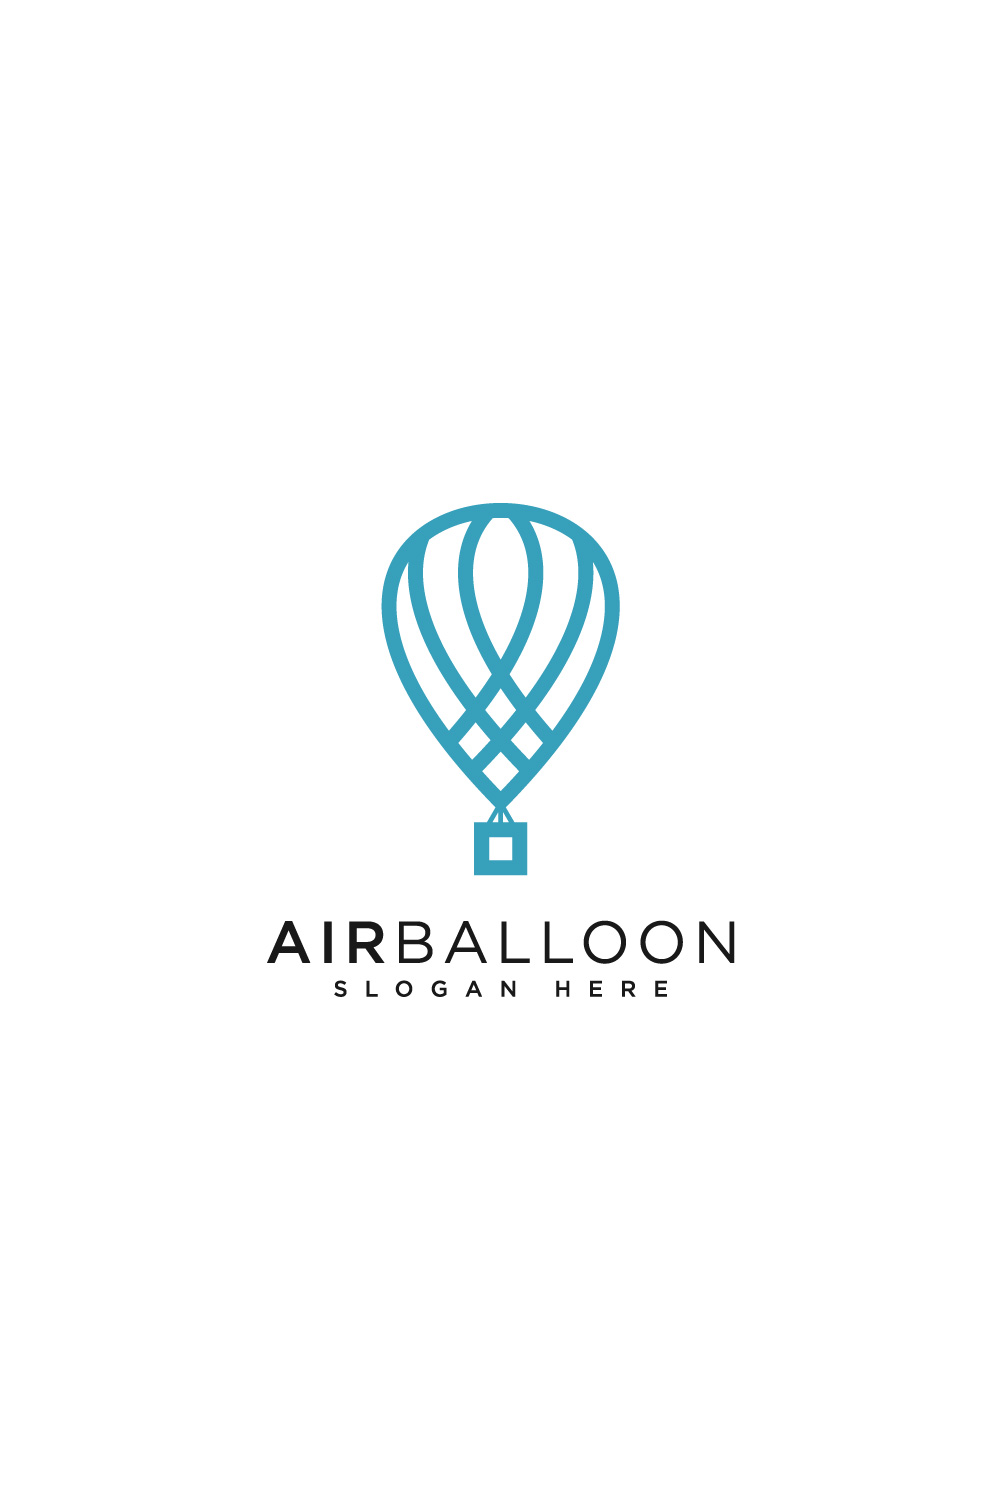 air balloon logo vector pinterest preview image.